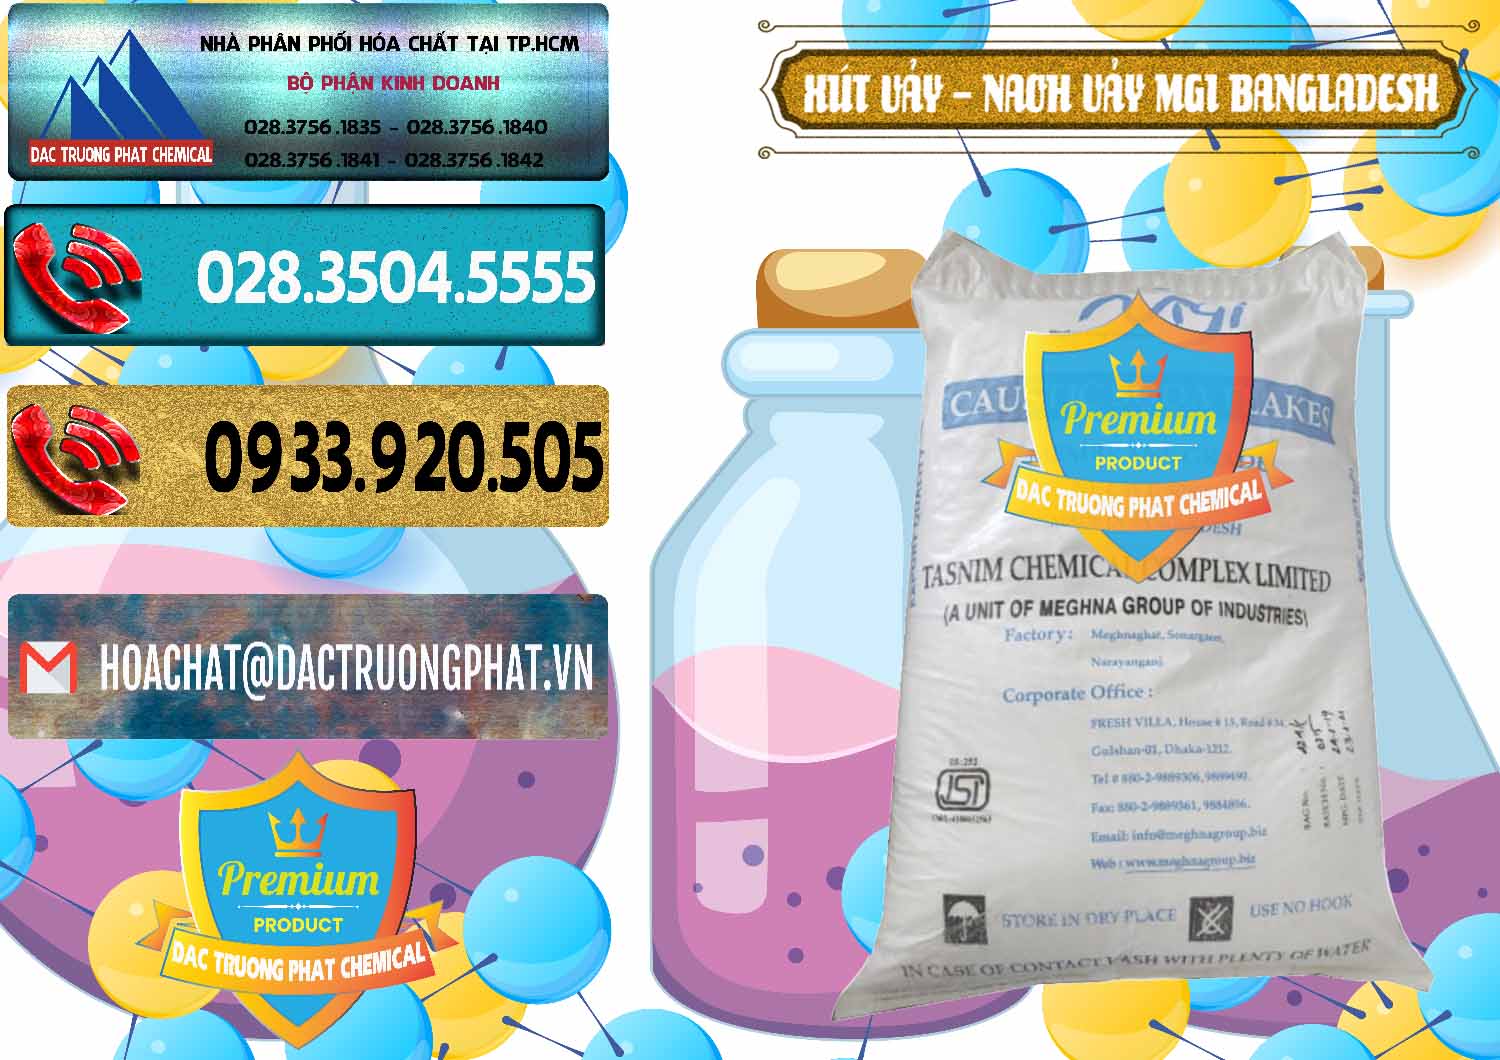 Đơn vị chuyên nhập khẩu ( bán ) Xút Vảy - NaOH Vảy 99% MGI Bangladesh - 0274 - Nơi chuyên bán _ cung cấp hóa chất tại TP.HCM - hoachatdetnhuom.com